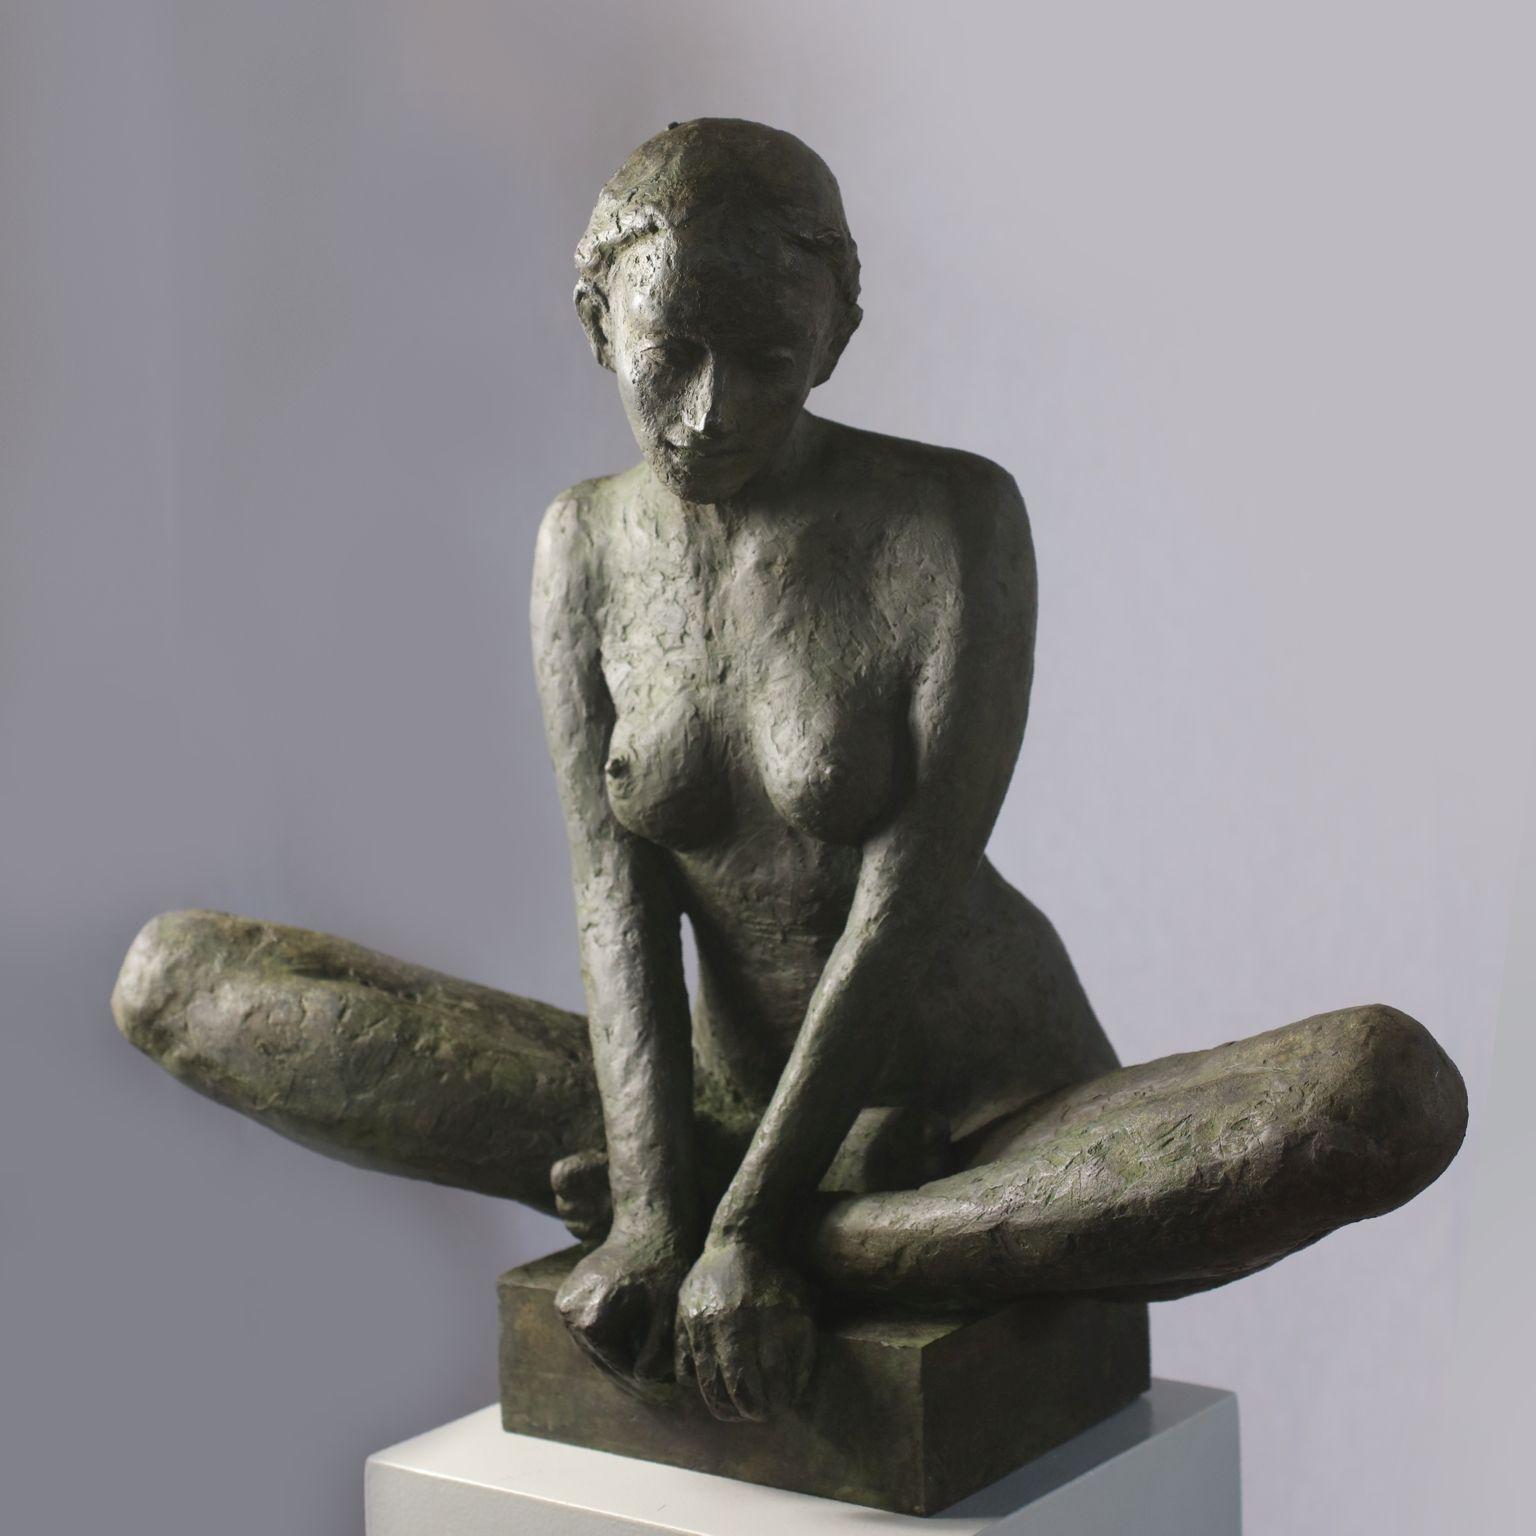 Susanne Kraisser Figurative Sculpture - Middle - popular contemporary nude female bronze sculpture in meditative pose